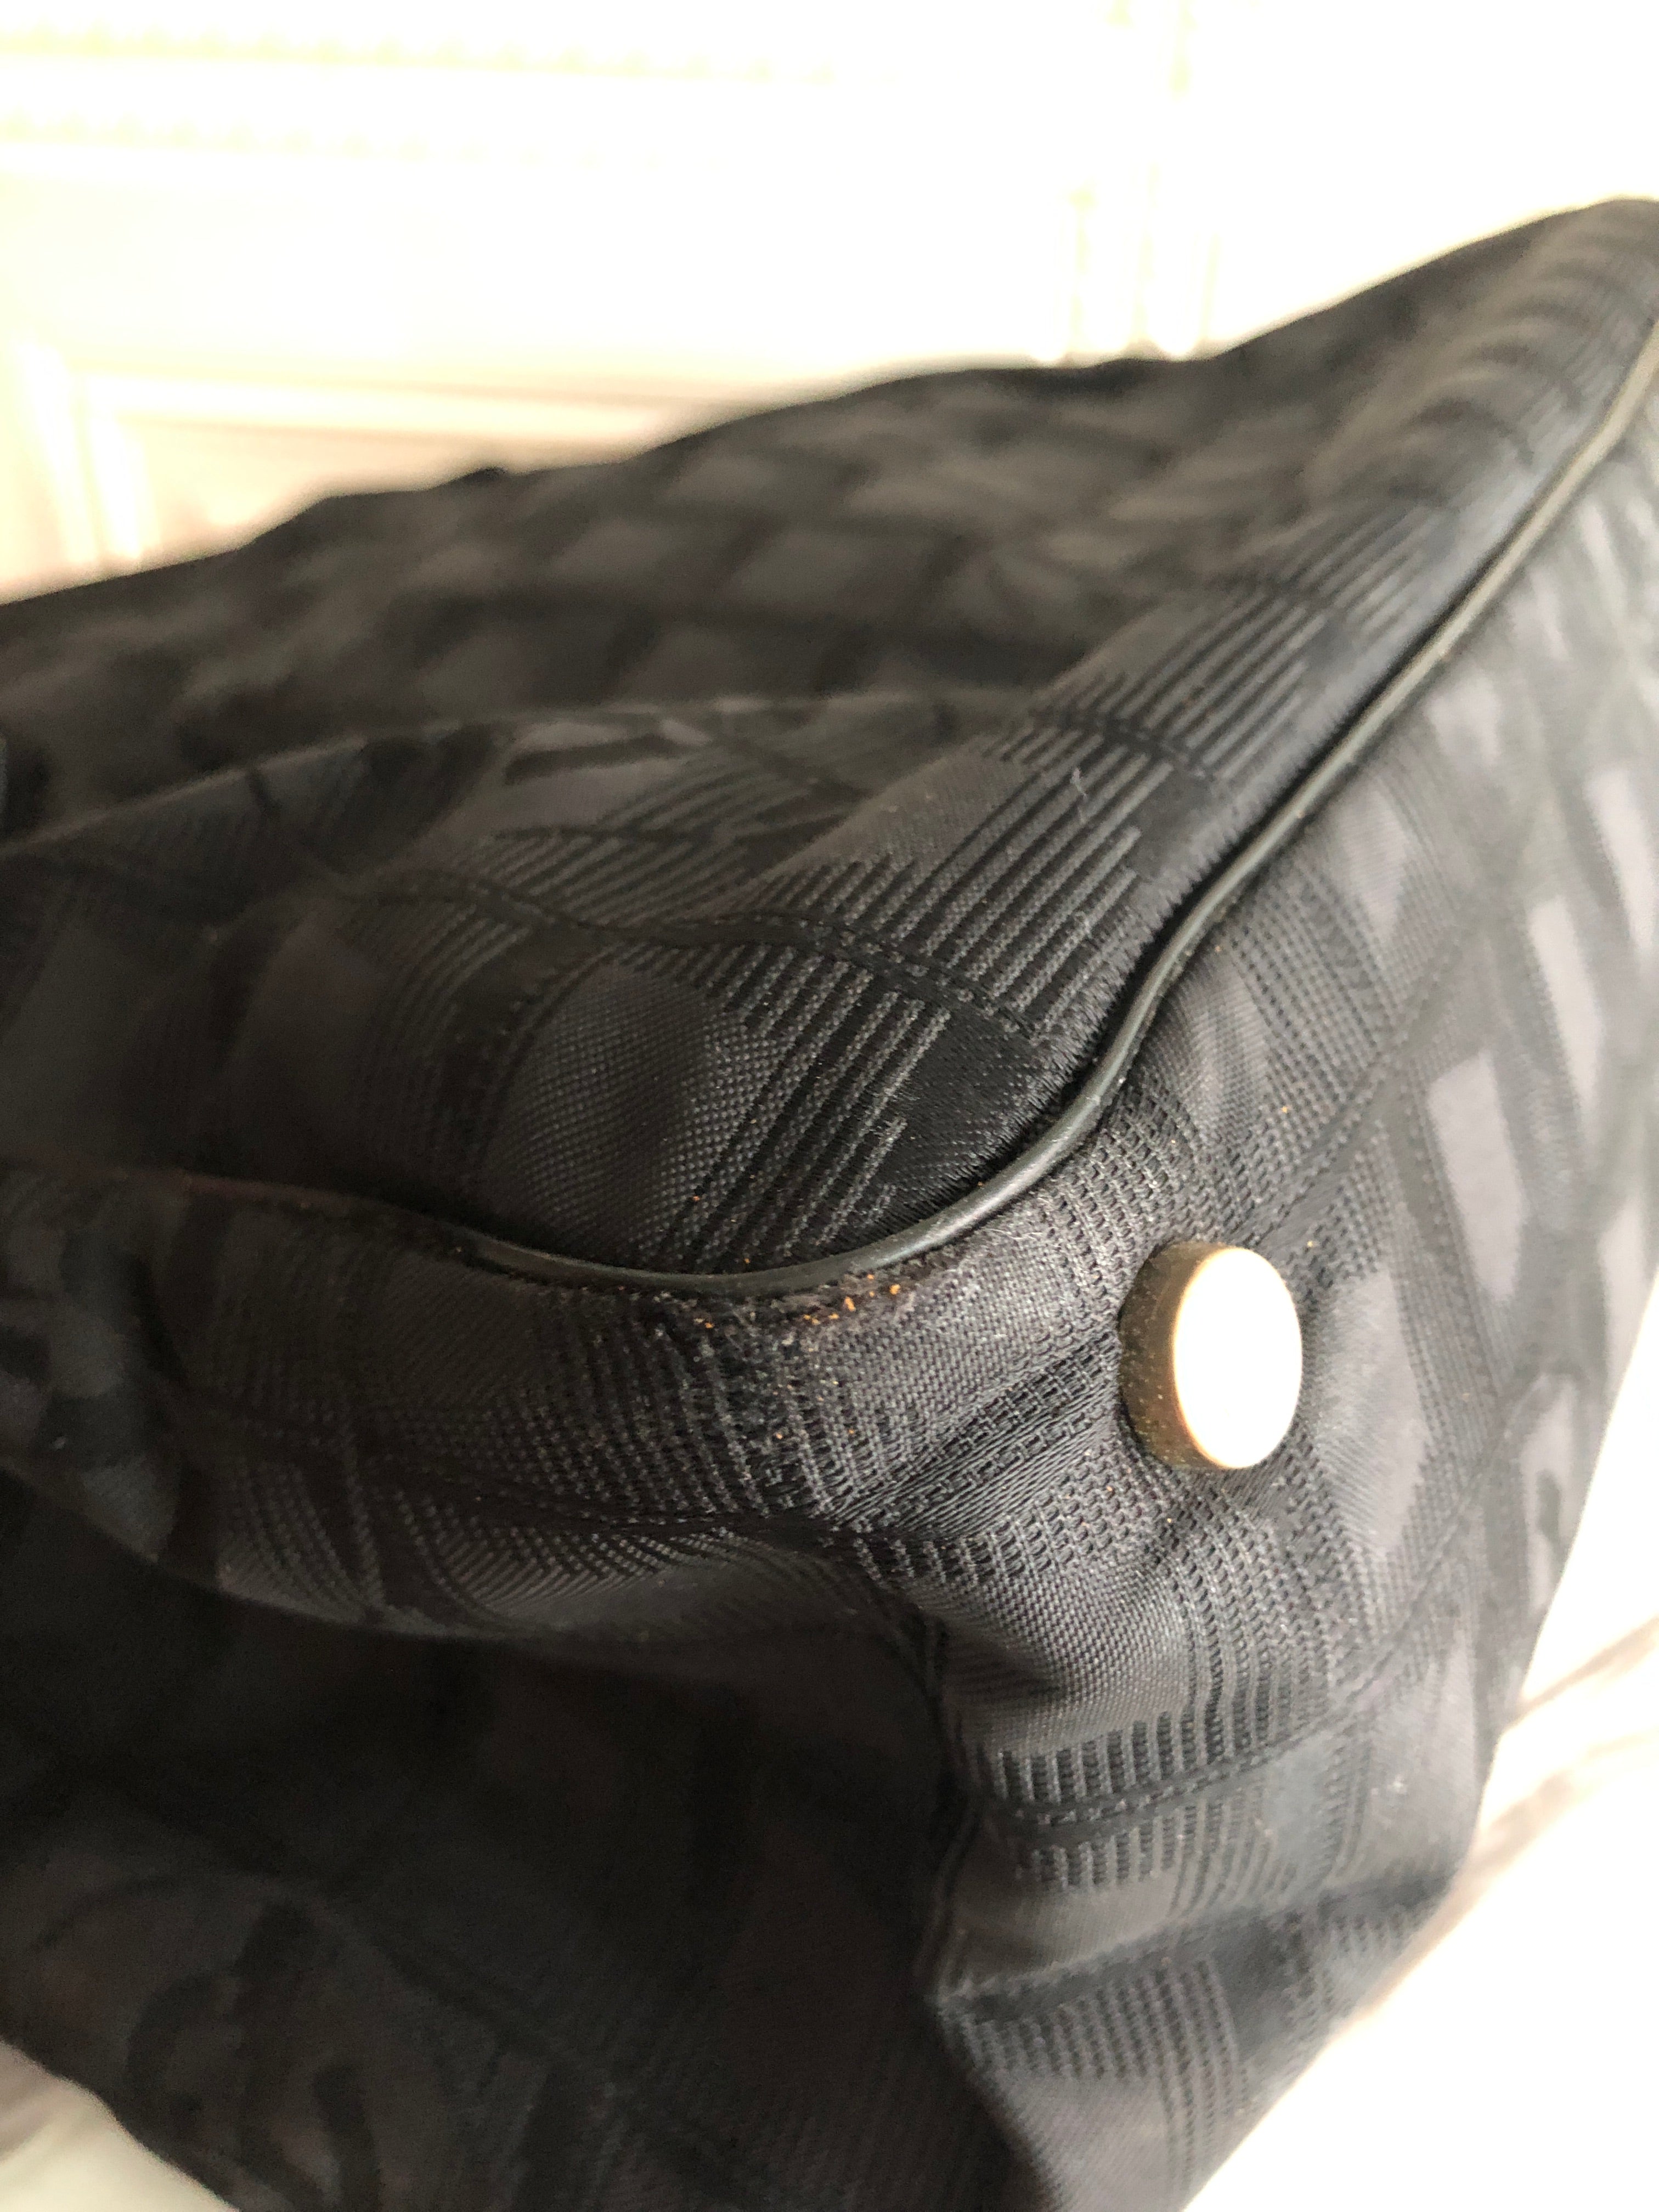 Chanel Nylon Travel Tote Bag – Leiame Luxe